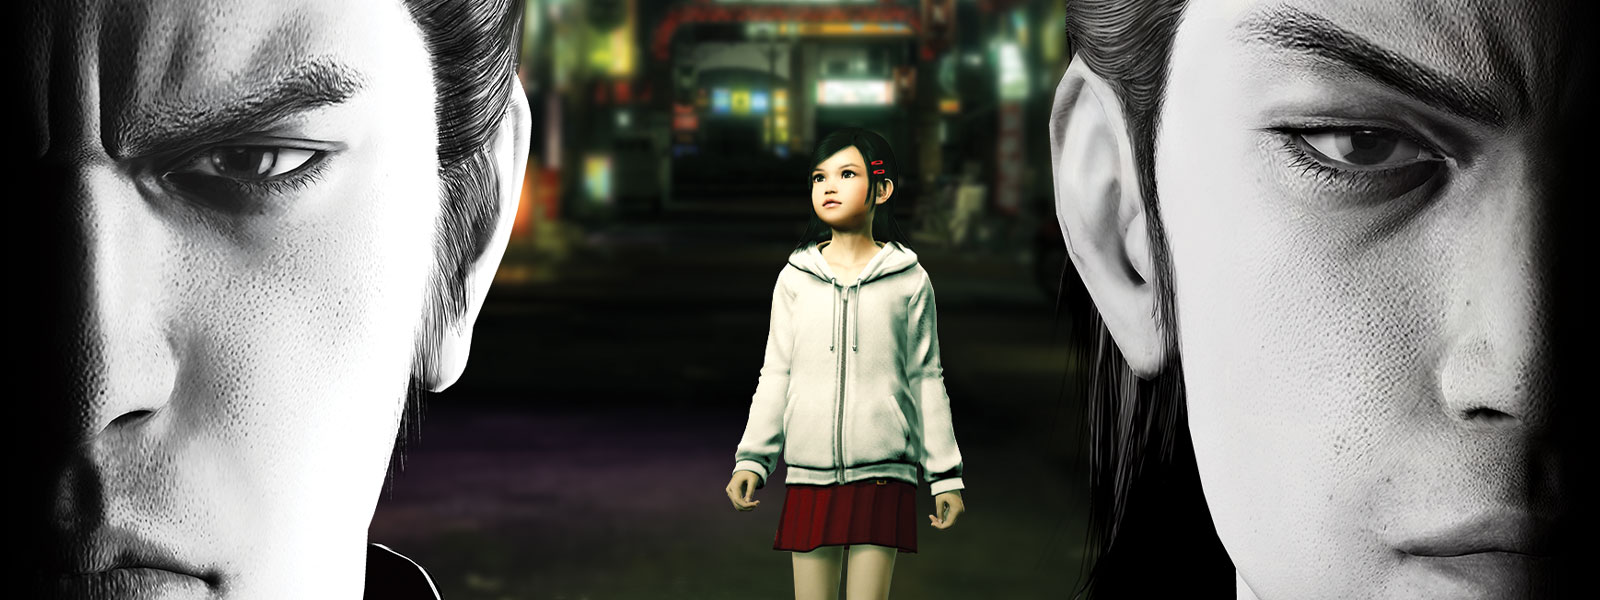 Küçük bir kız, arkalarındaki şehirde duruyorken karamsar şekilde ileri bakan iki Yakuza karakteri.